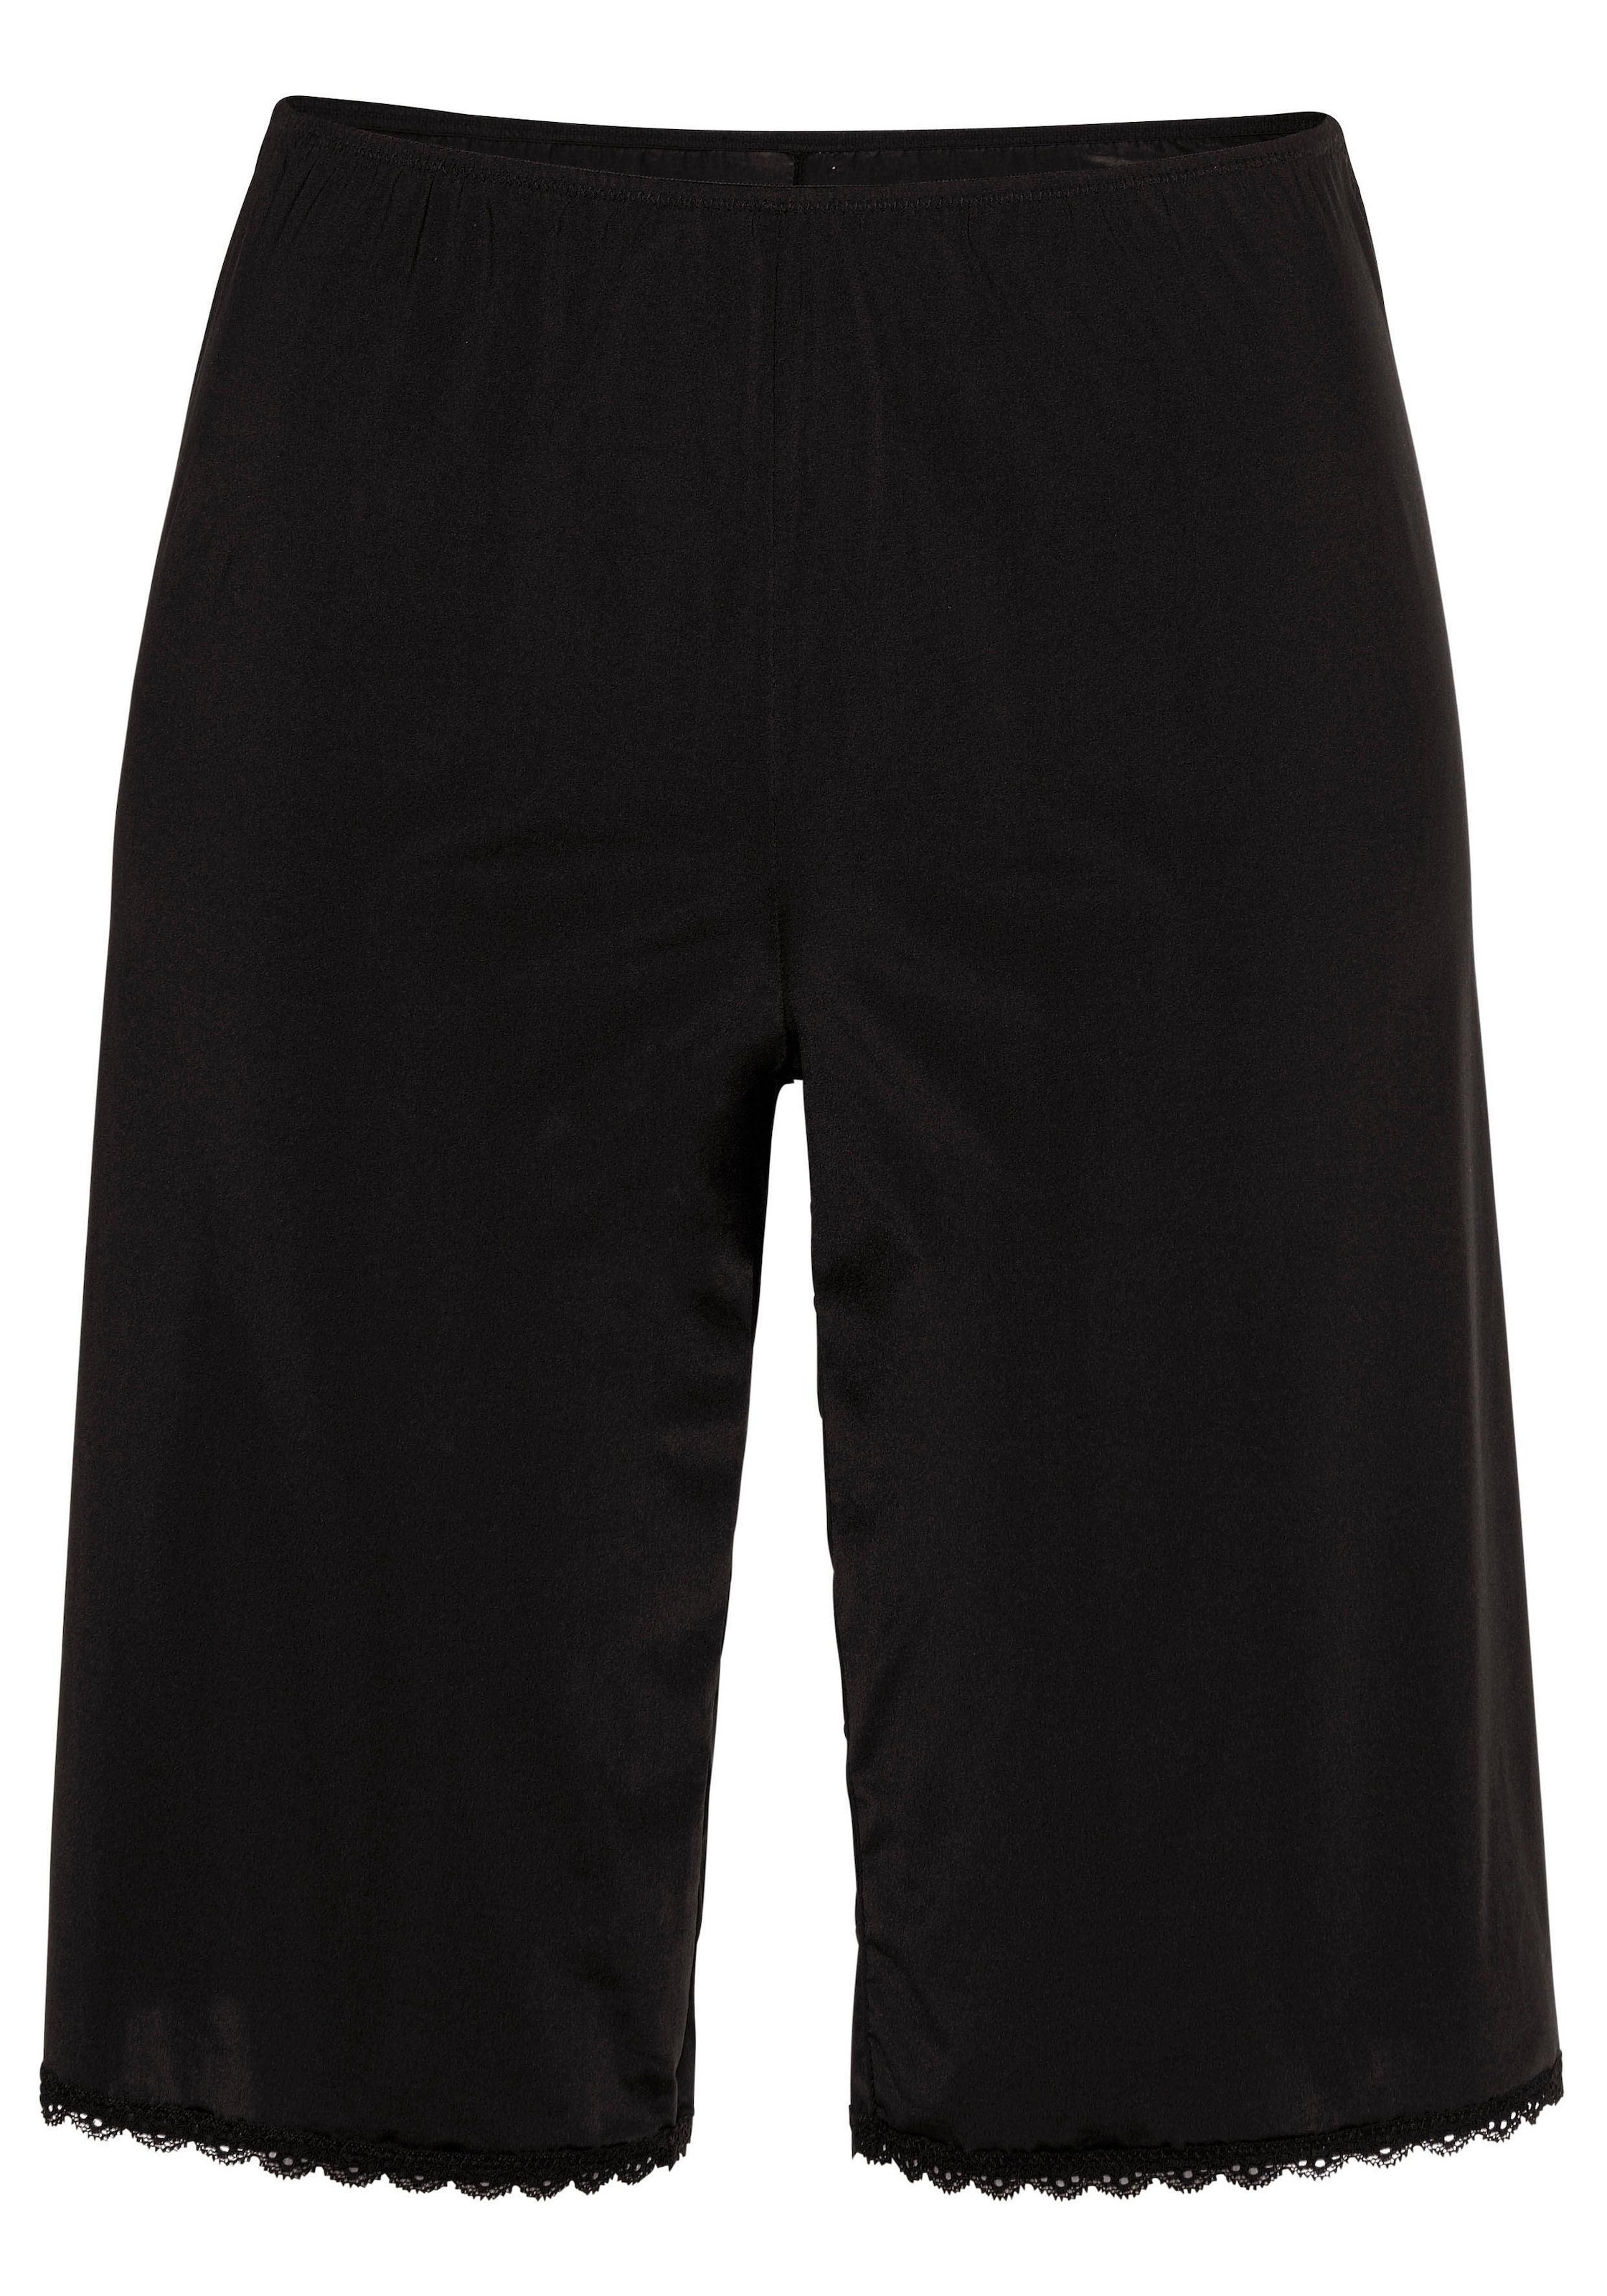 Nuance Unterrock, für kurze Röcke, & | » kaufen online LASCANA Basic Bademode, Lingerie Dessous Unterwäsche